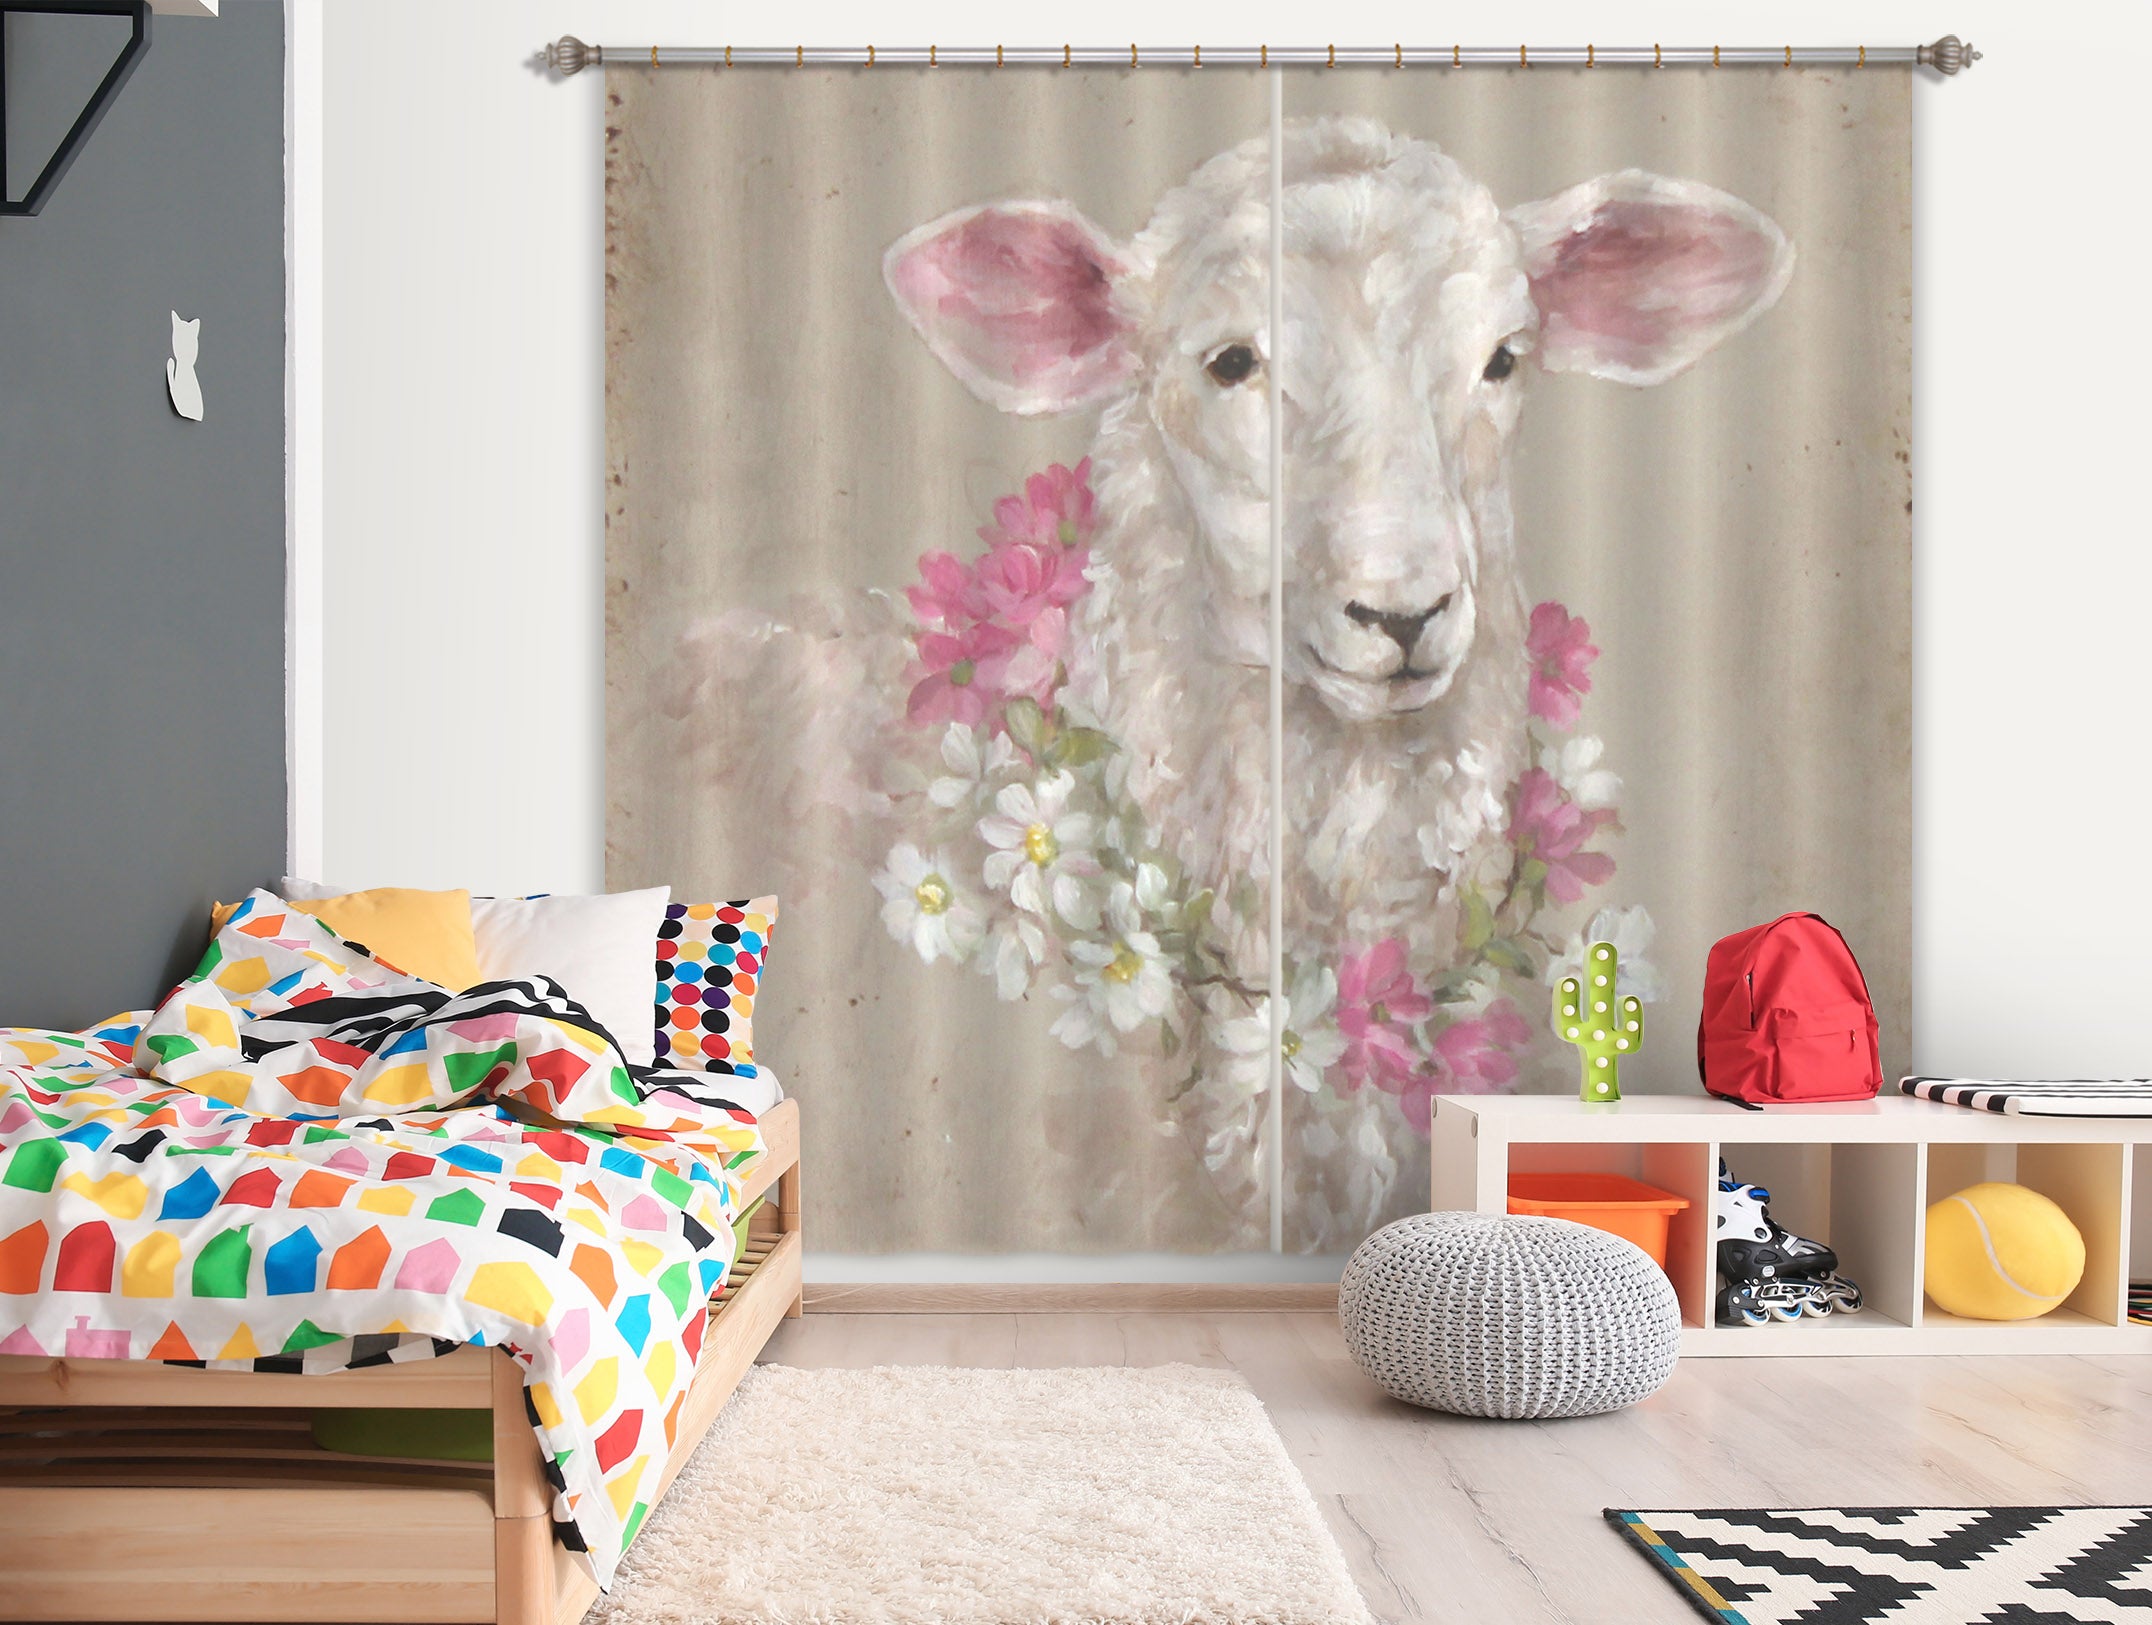 3D Wreath Sheep 3079 Debi Coules Curtain Curtains Drapes